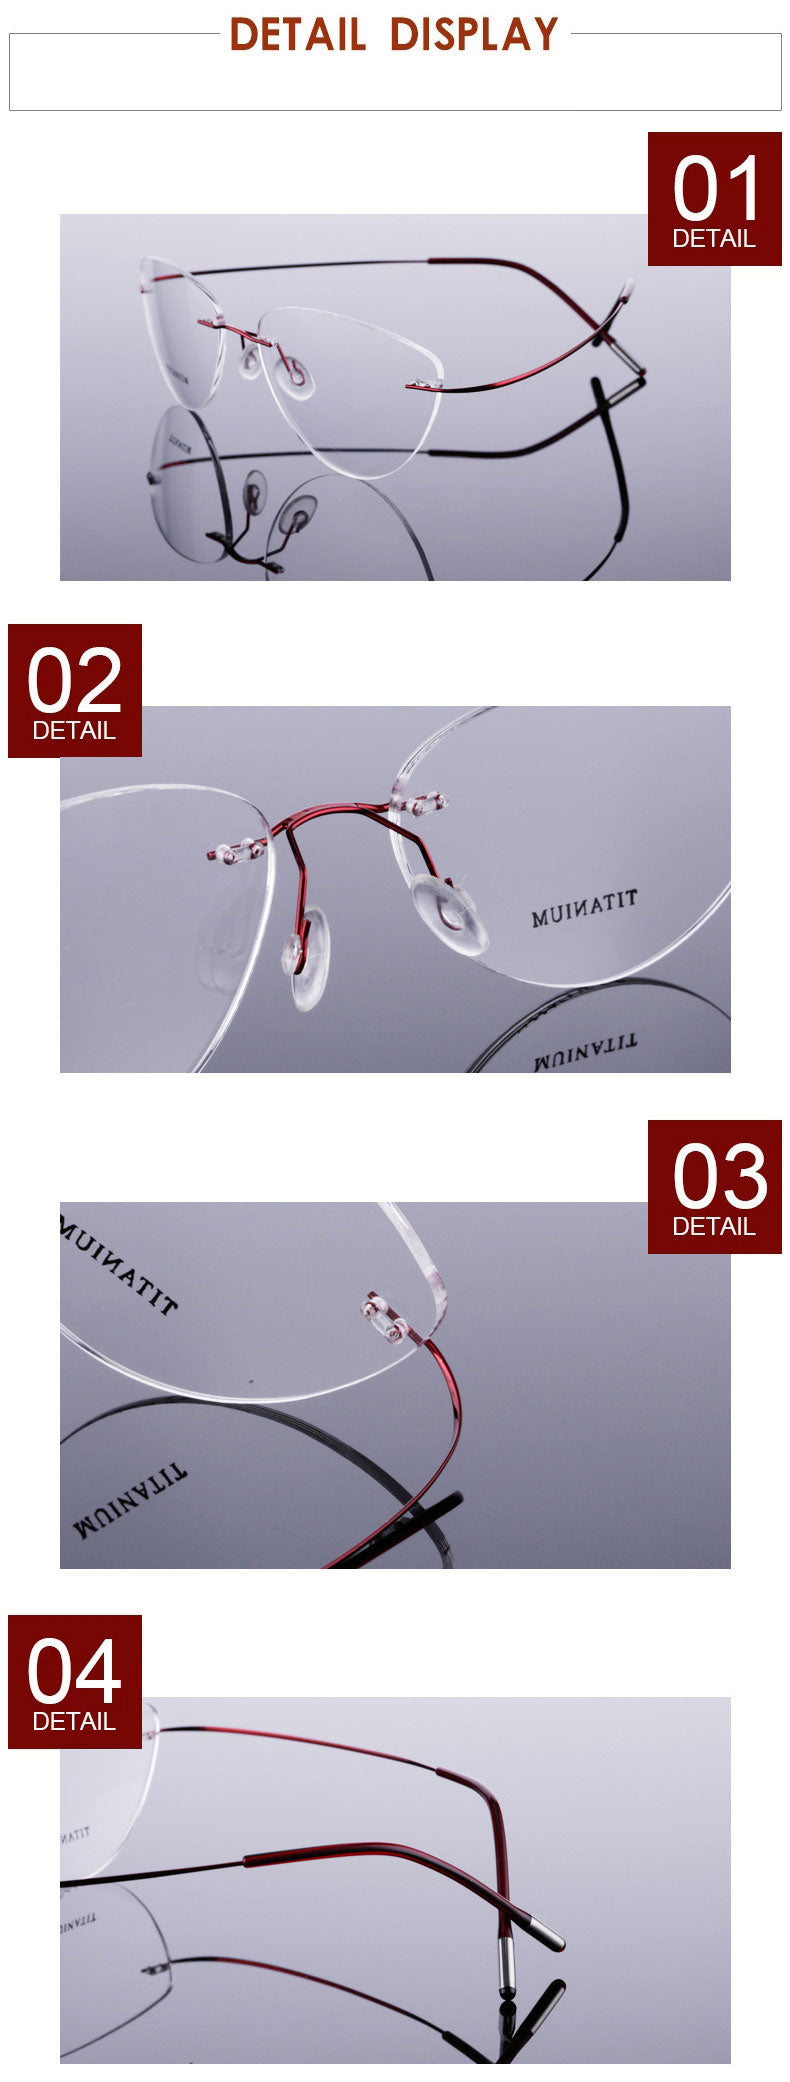 Reven Jate Flexible Titanium Alloy Rimless Eyeglasses Frame For Glasses Eyewear For Women And Men 20003 Rimless Reven Jate   